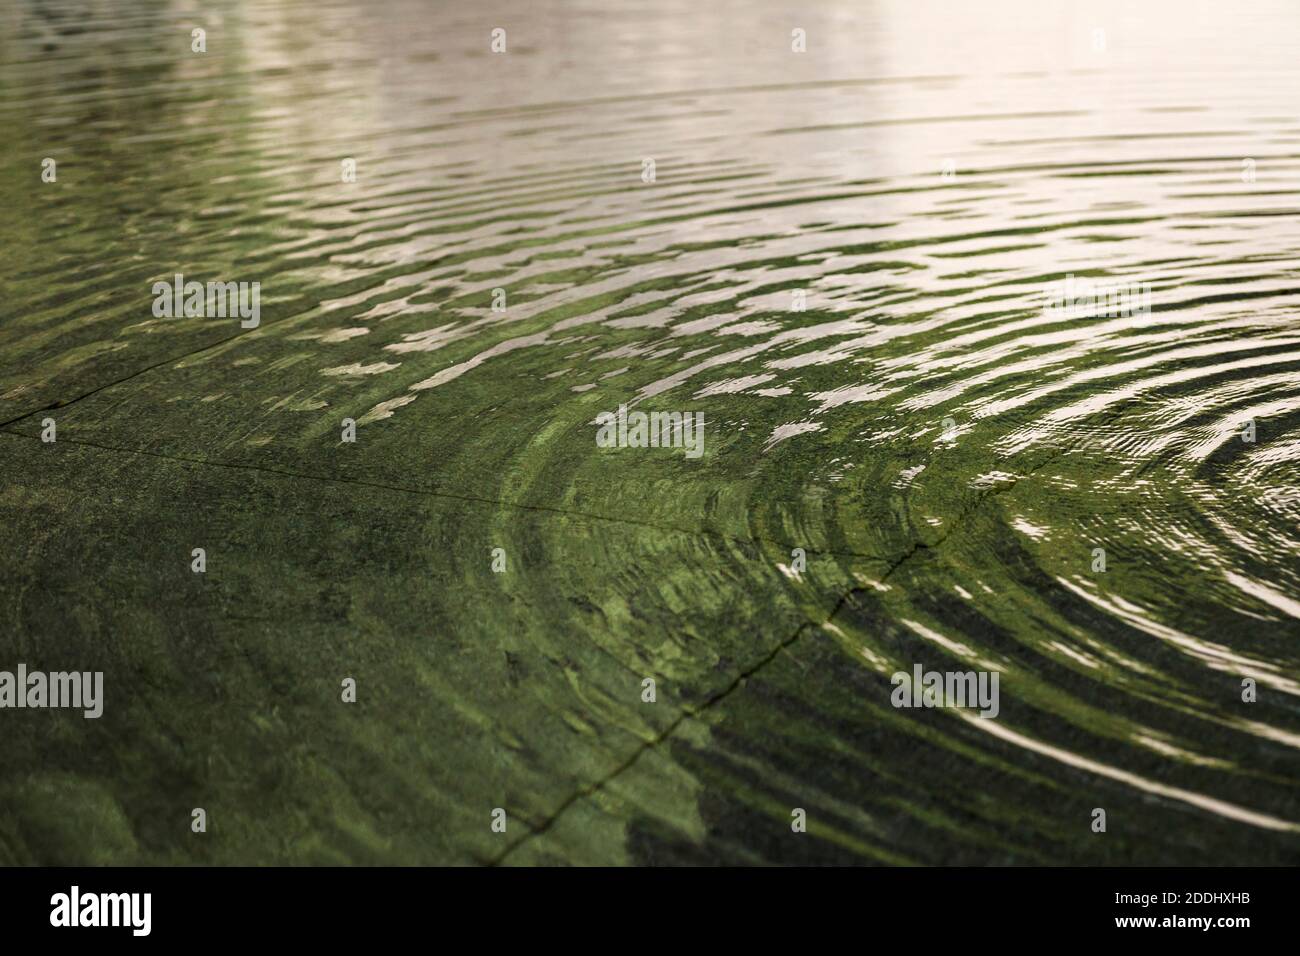 Vue de près horizontale des ondulations circulaires sur la surface tranquille de l'étang de D.T. Suzuki Museum Water Mirror Garden, Kanazawa, Japon Banque D'Images